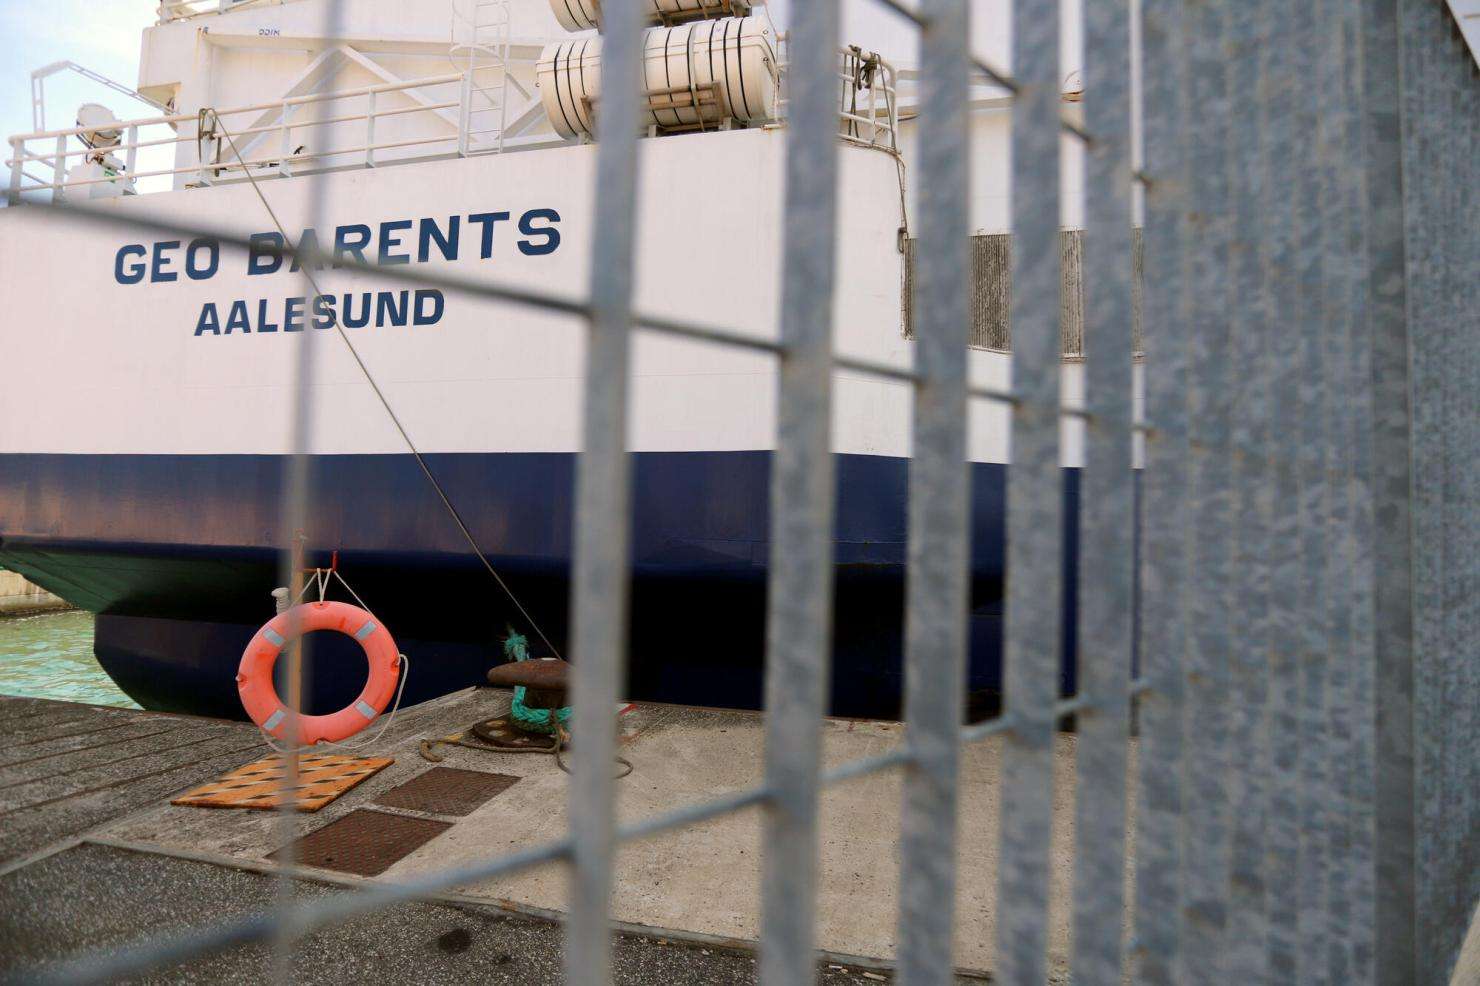 Barco de búsqueda y rescate de MSF detenido en Italia |  Médicos Sin Fronteras